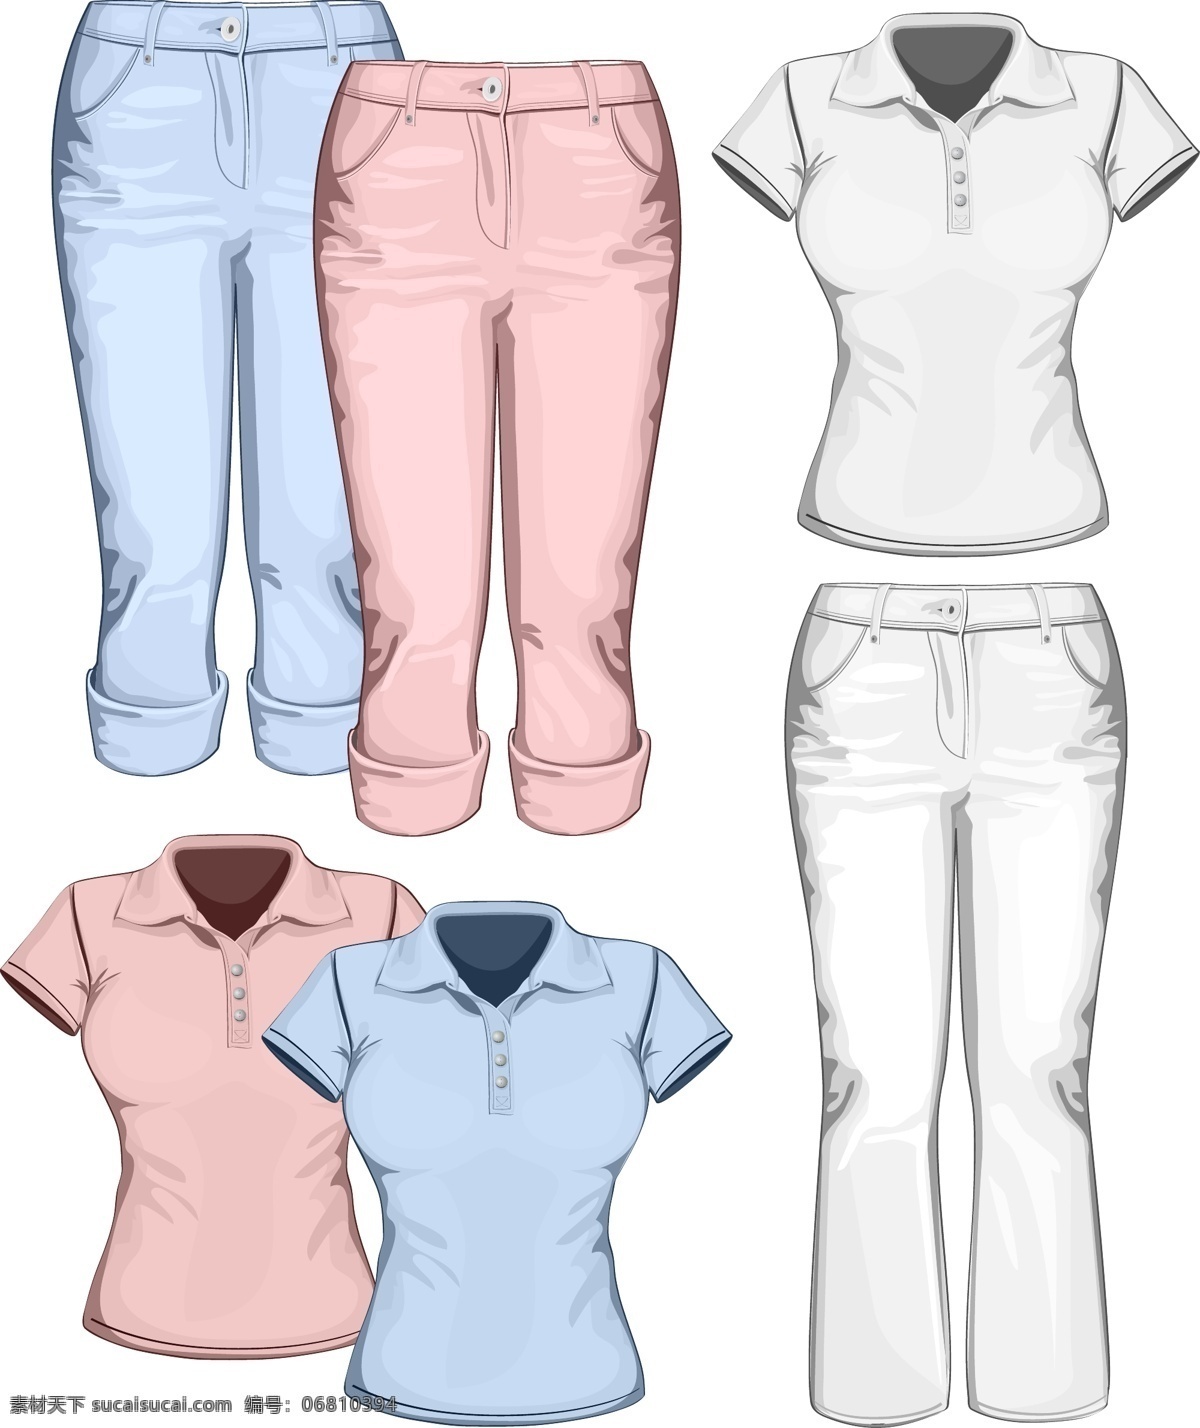 运动服款式 裤子 衣服 半袖 长裤 包色 蓝色 粉色 款式 模型 其他模板 矢量素材 白色